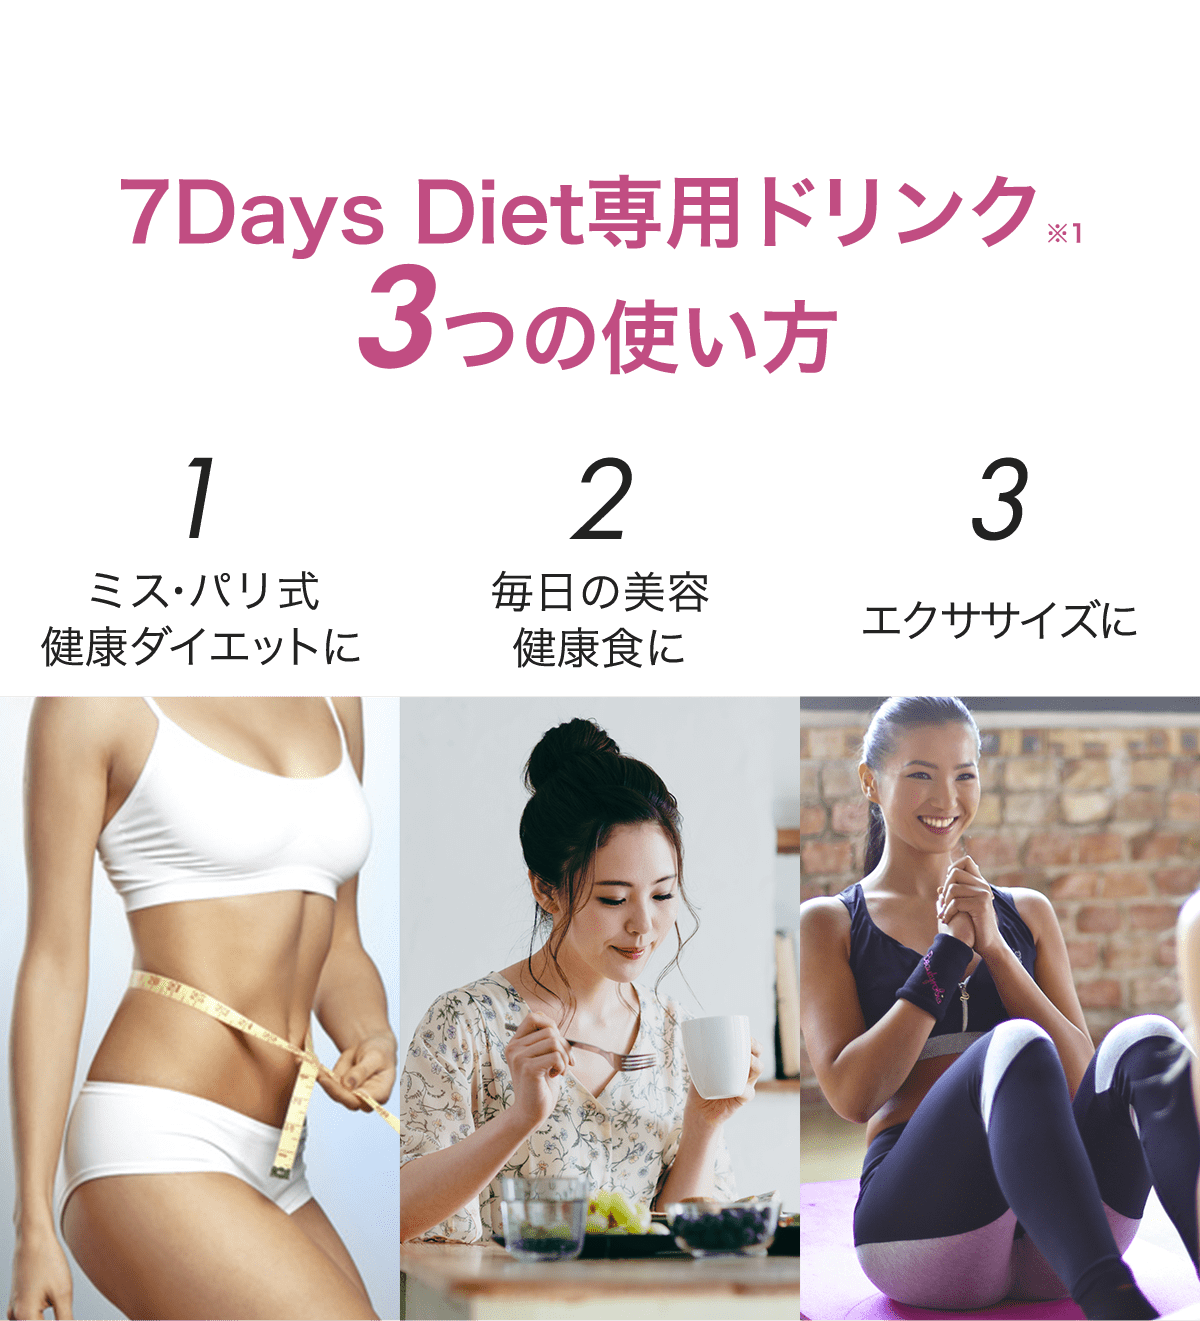 7Days Diet専用ドリンク3つの使い方